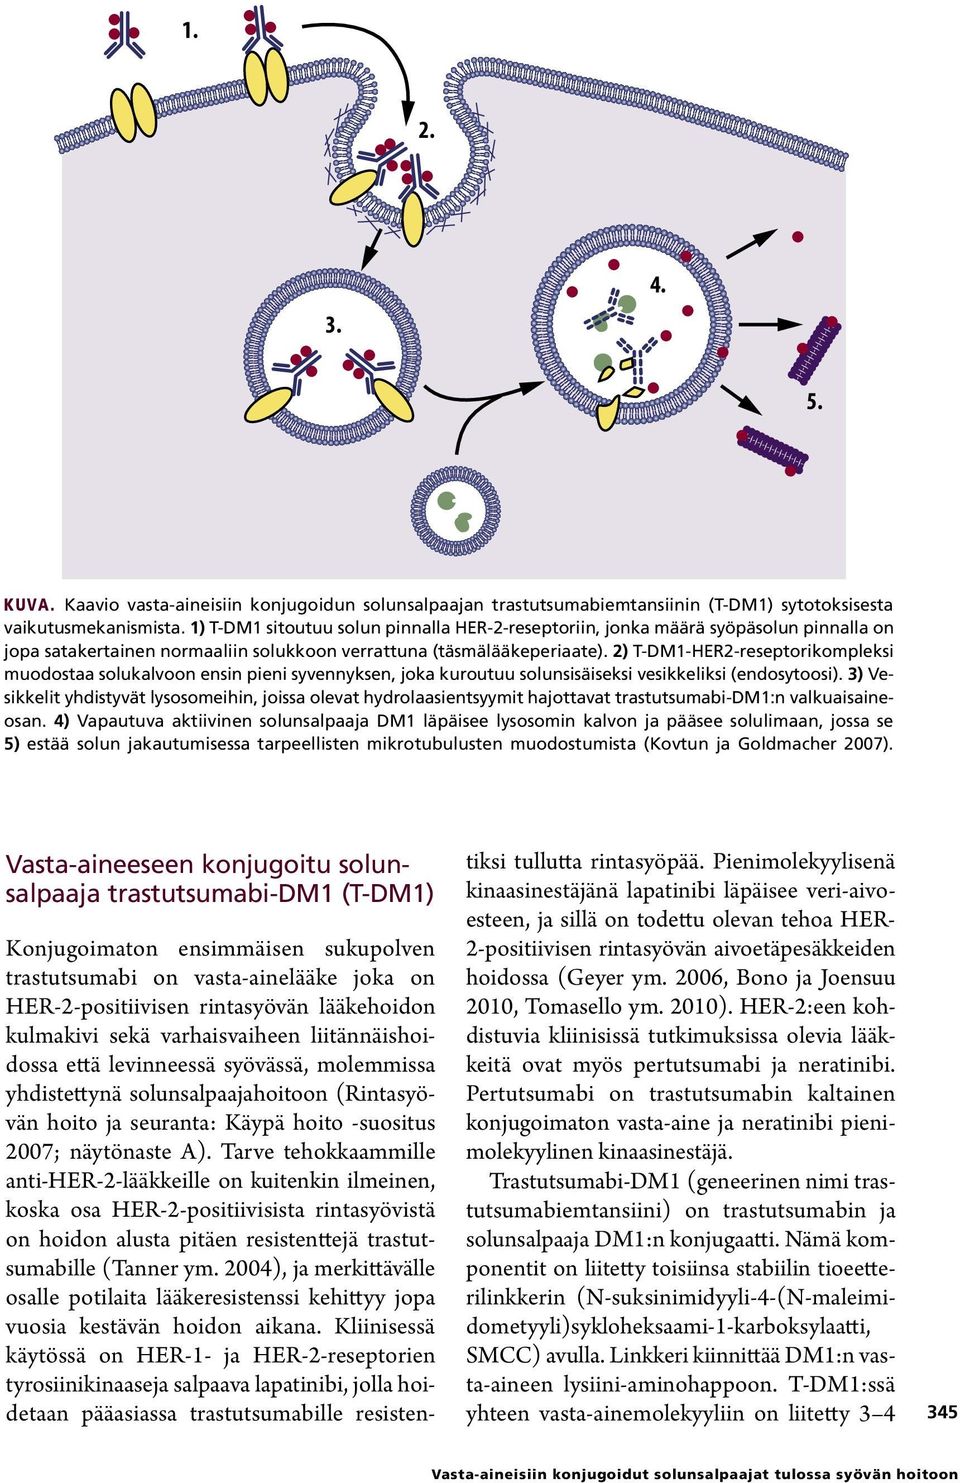 2) T-DM1-HER2-reseptorikompleksi muodostaa solukalvoon ensin pieni syvennyksen, joka kuroutuu solunsisäiseksi vesikkeliksi (endosytoosi).